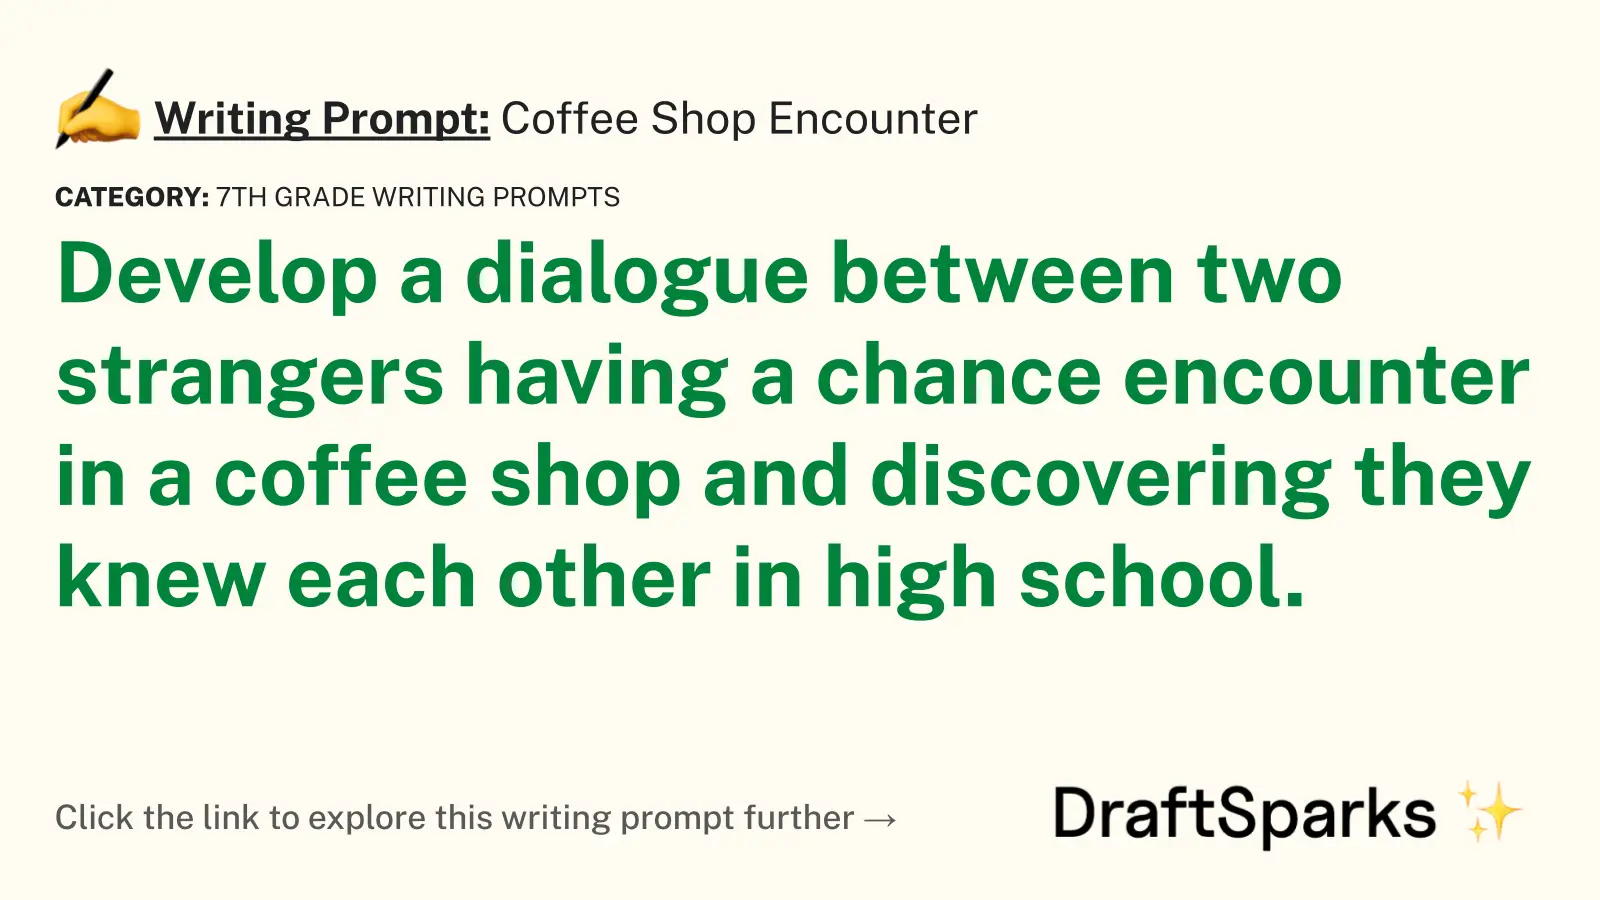 Coffee Shop Encounter